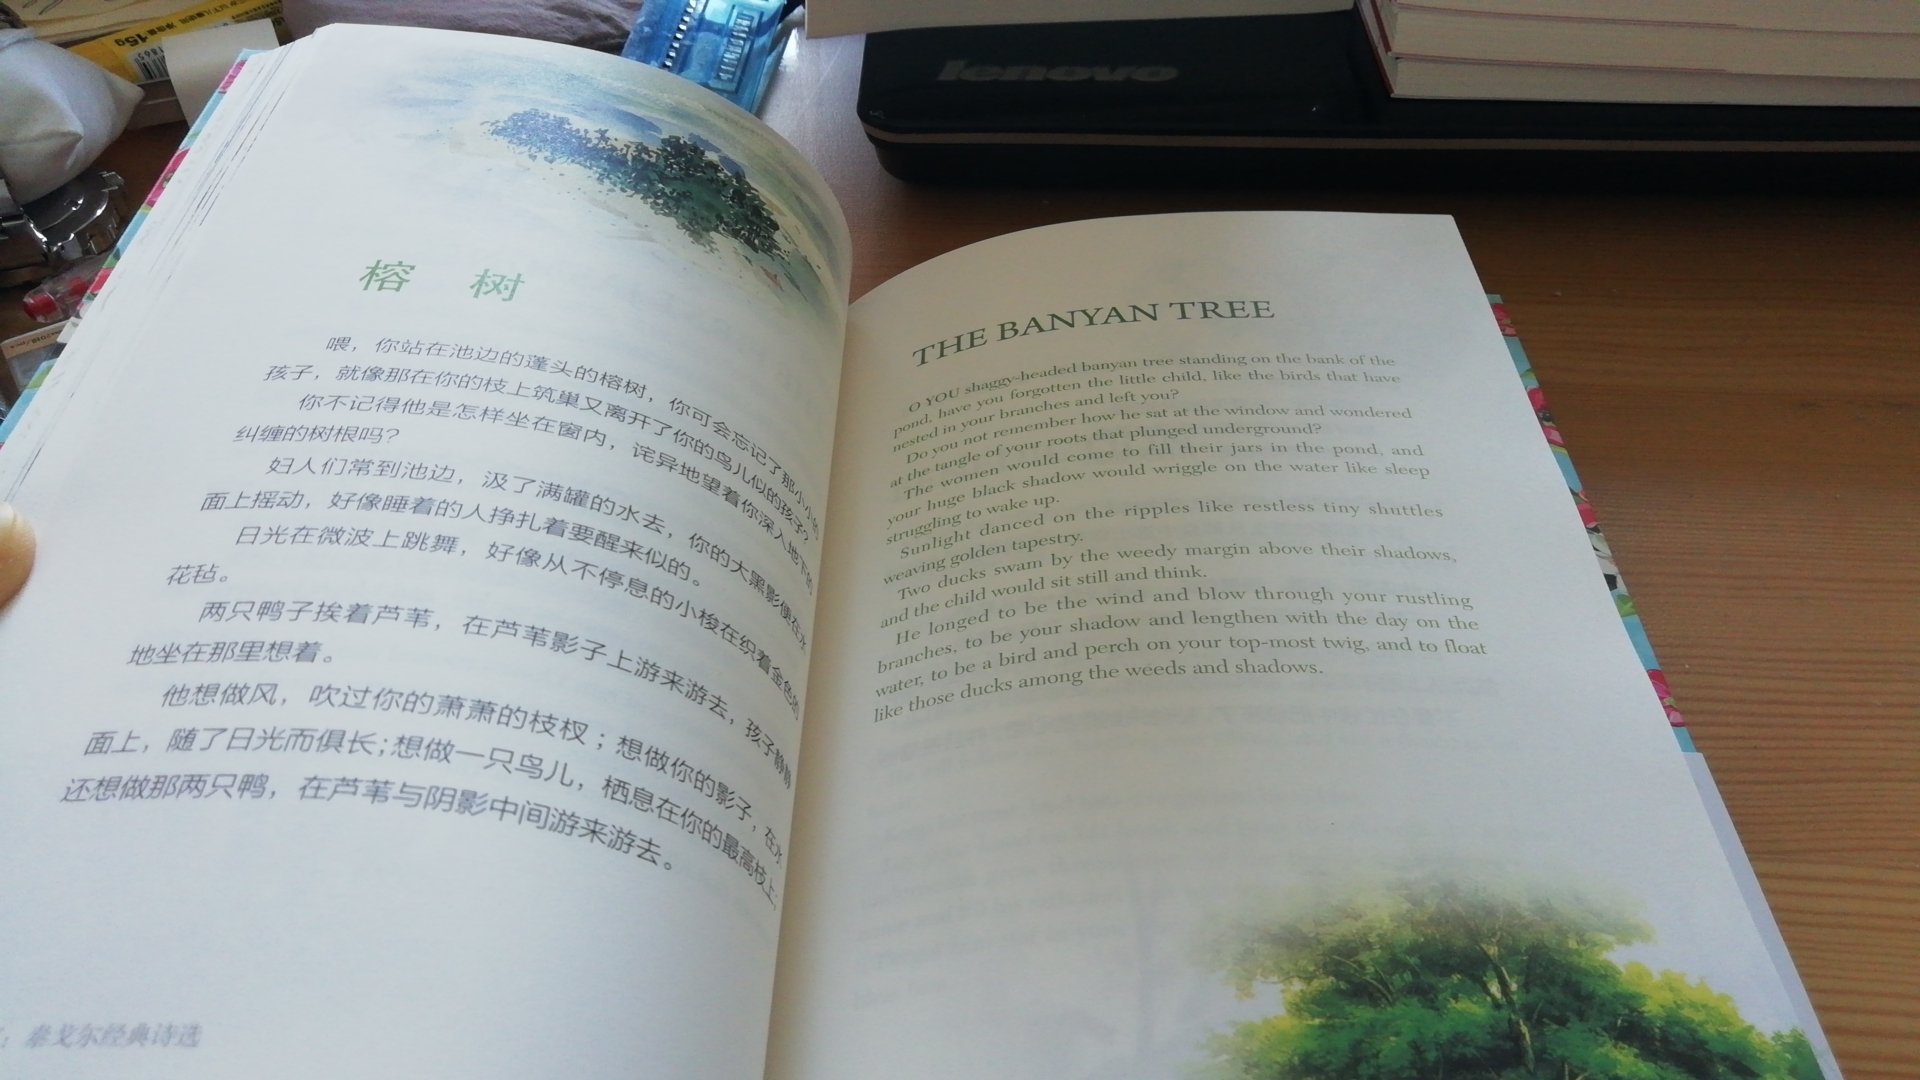 中英文都有的。非常好，如果这本书初中，高中时候读一读就好了。真是可怜现在中学的学生，天天就是考试考试，受不了一点艺术熏陶！